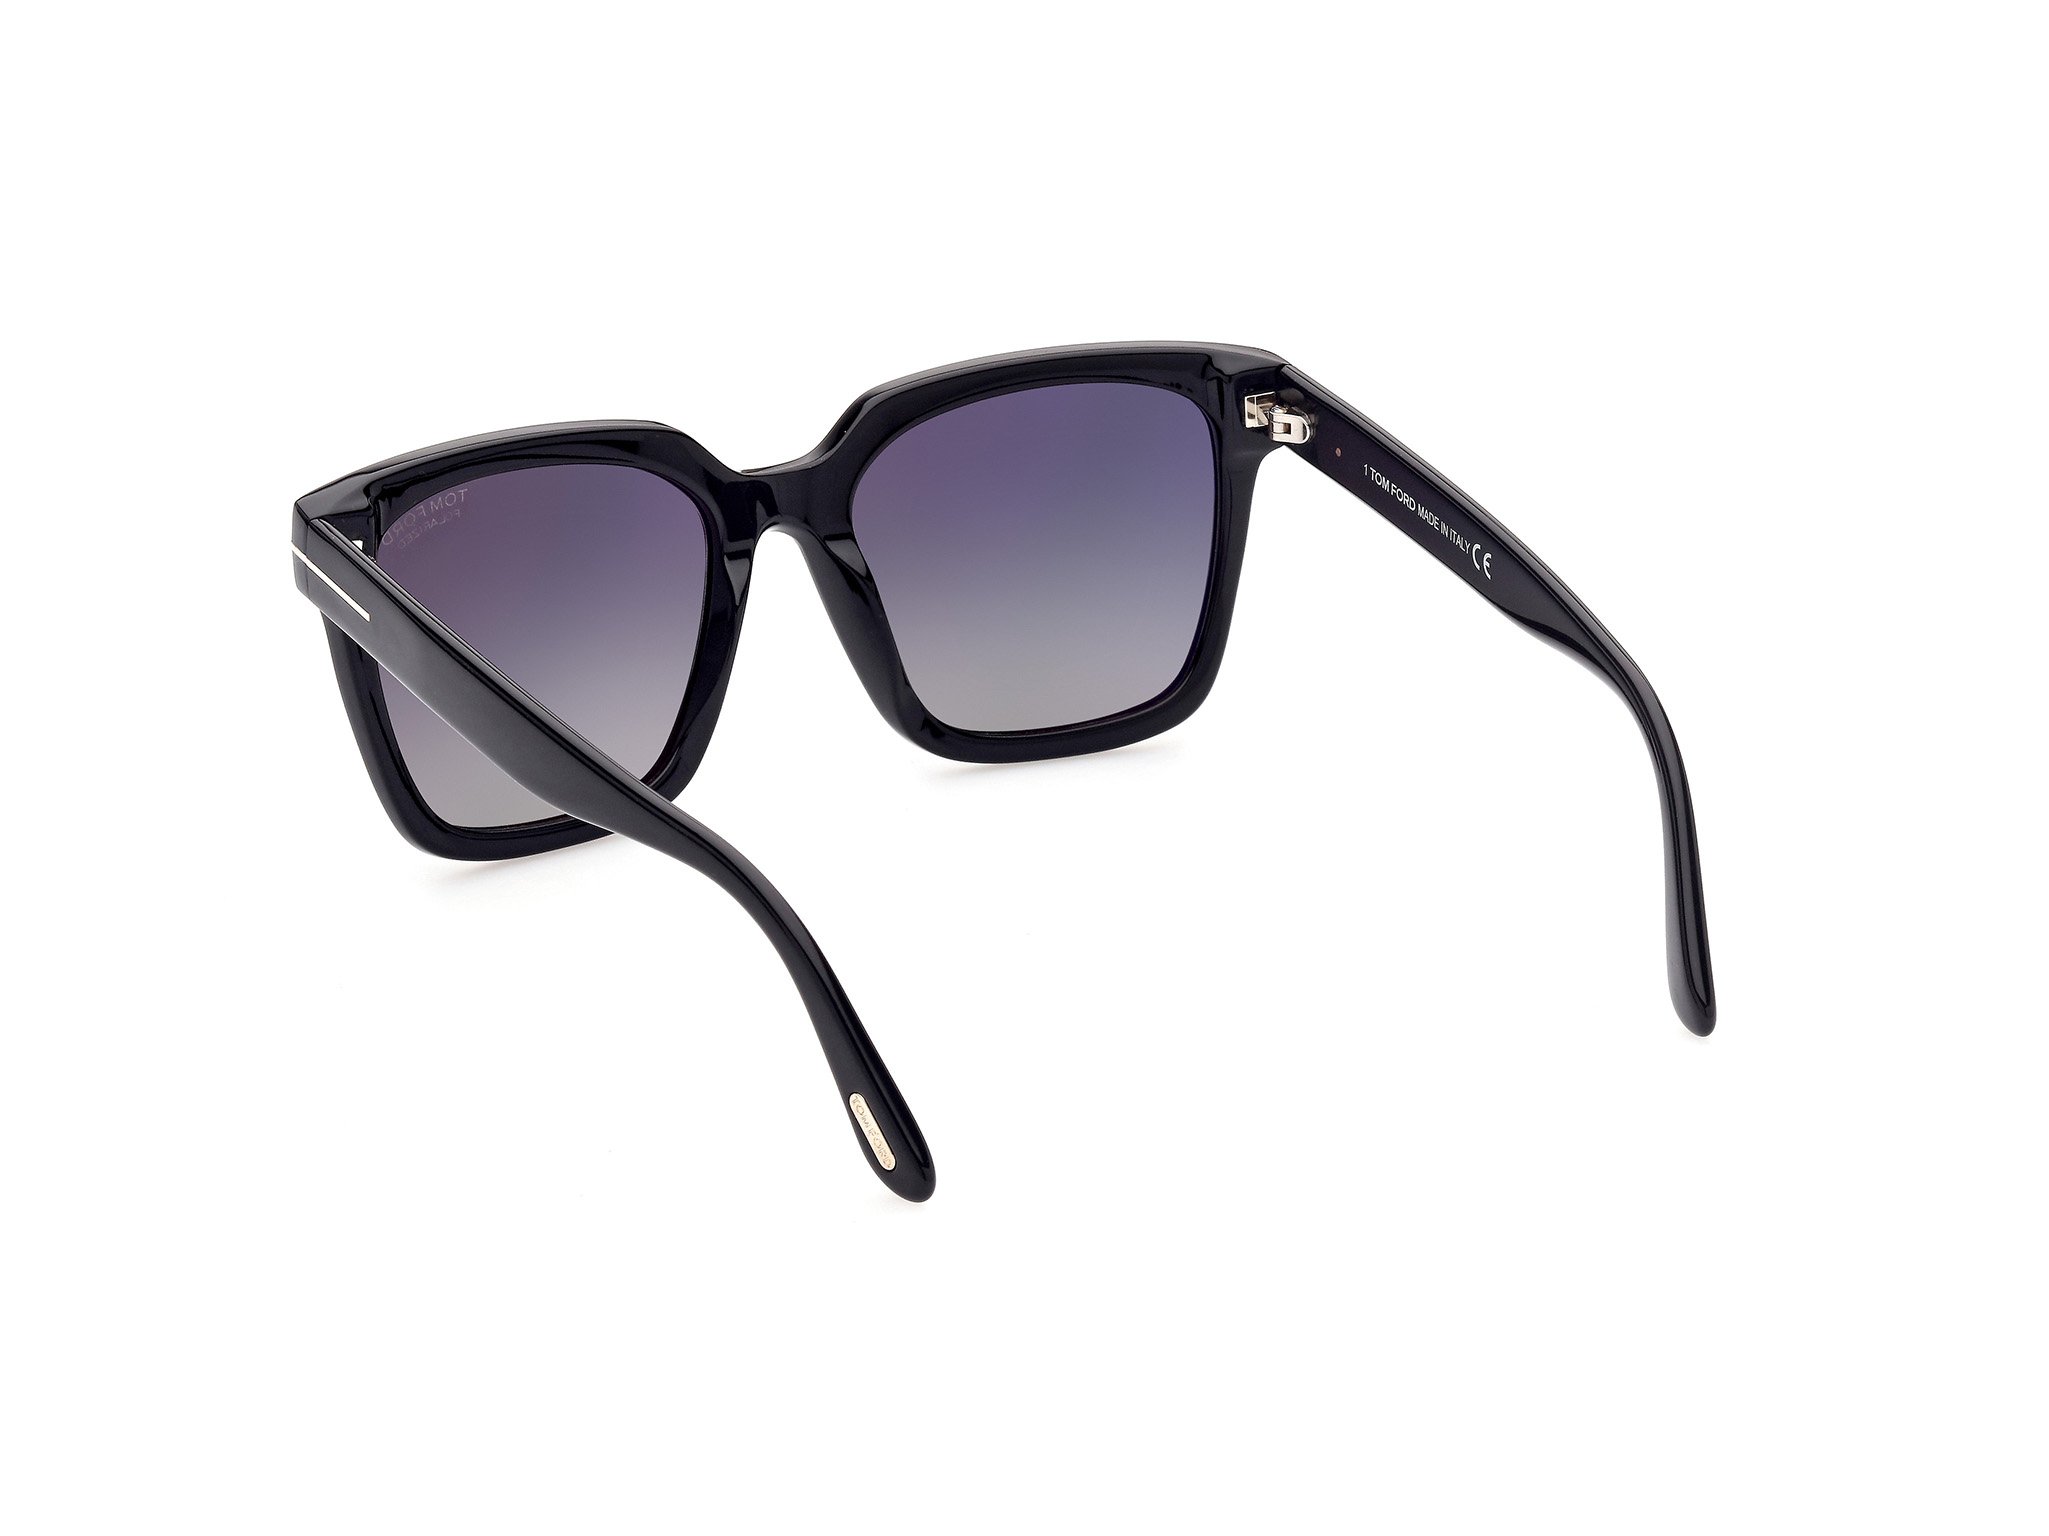 Das Bild zeigt die Sonnenbrille FT0952 01D von der Marke Tom Ford in schwarz.